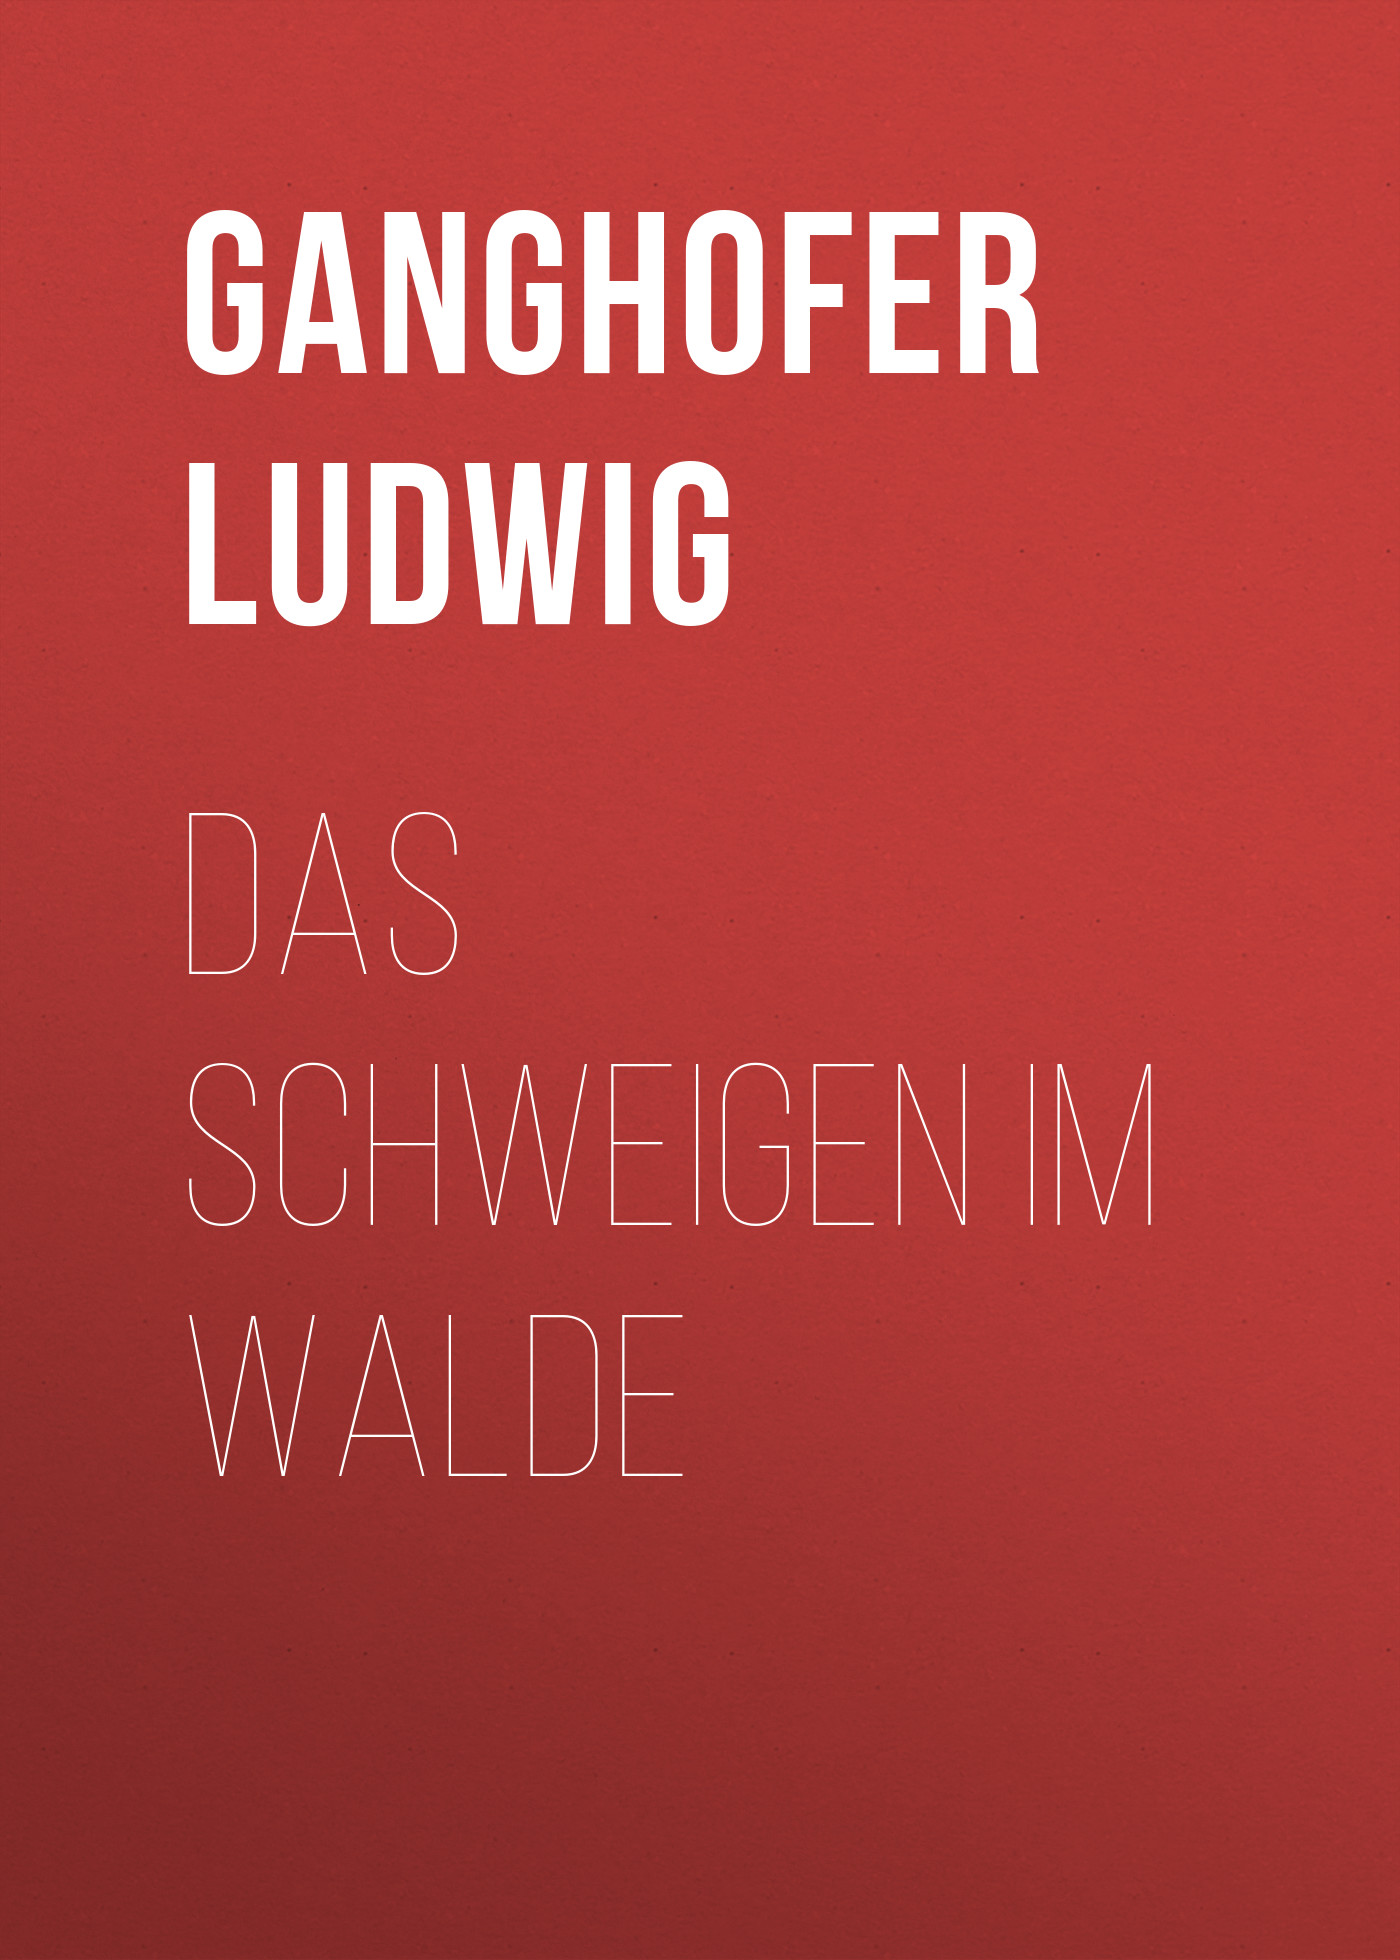 Книга Das Schweigen im Walde из серии , созданная Ludwig Ganghofer, может относится к жанру Зарубежная старинная литература, Зарубежная классика. Стоимость электронной книги Das Schweigen im Walde с идентификатором 24860451 составляет 0 руб.